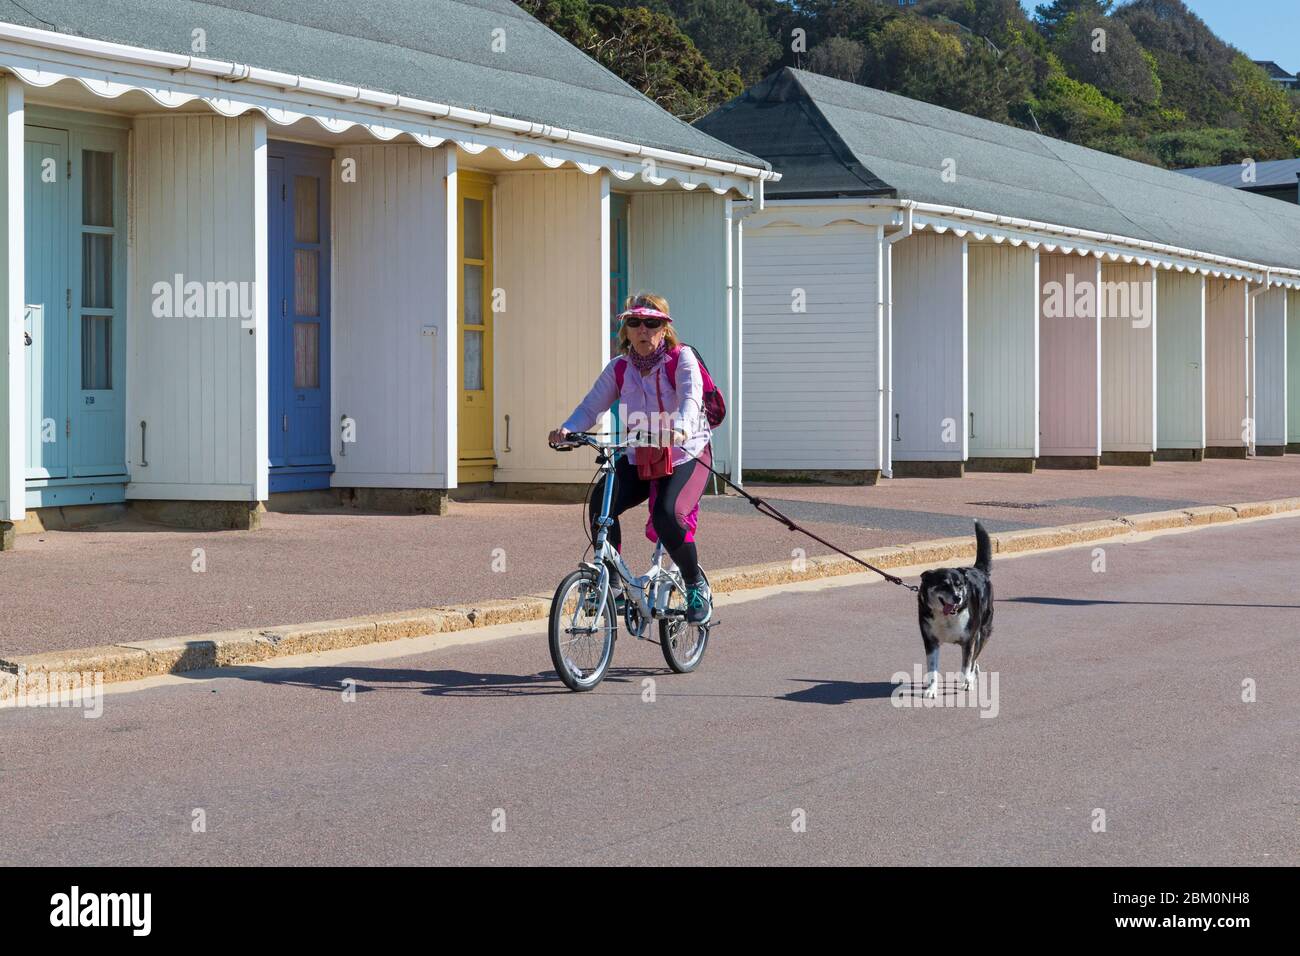 Bournemouth, Dorset, Großbritannien. Mai 2020. UK Wetter: Schöner warmer sonniger Tag mit steigenden Temperaturen bereit für das lange Feiertagswochenende. Die Strände sind hauptsächlich menschenleer, und die Menschen nehmen ihre zulässige Bewegung am Meer, die meisten halten sich an die Coronavirus-Richtlinien. Radfahrerin entlang der Promenade mit Hund auf Blei vorbei an Strandhütten - Fahrrad fahren. Quelle: Carolyn Jenkins/Alamy Live News Stockfoto